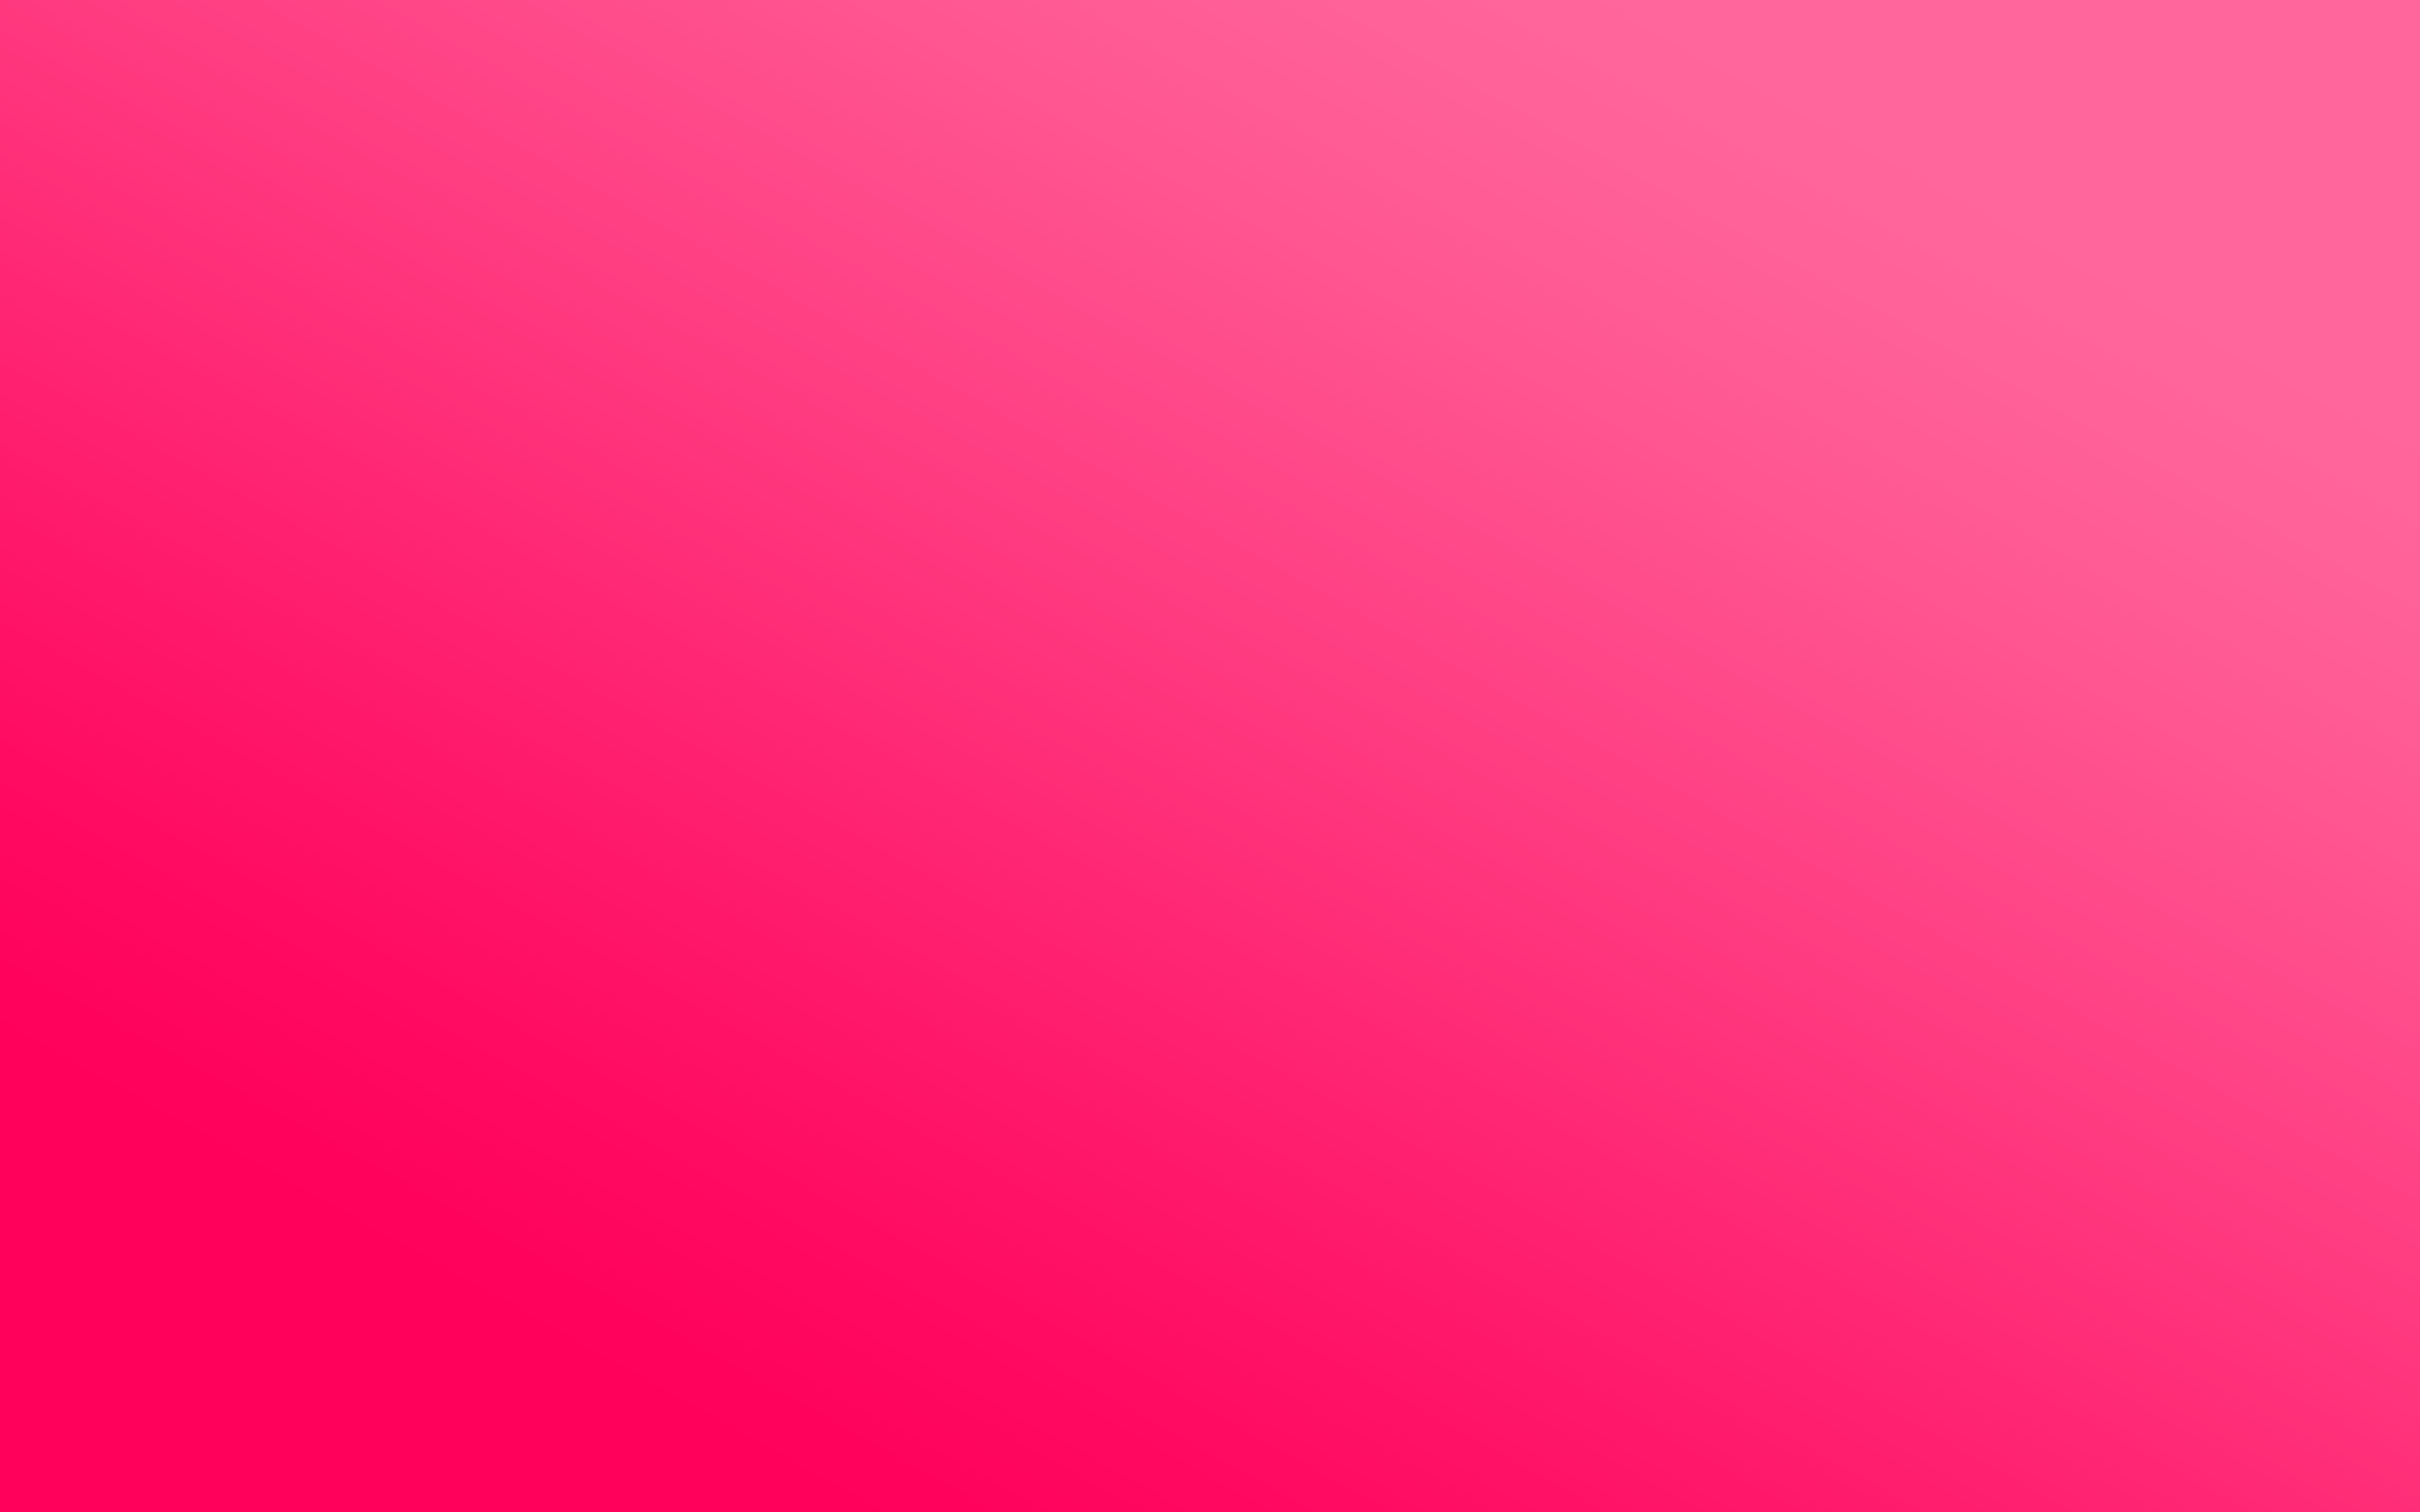 Màu hồng đơn sắc: Màu hồng đơn sắc được xem là biểu tượng của sự ngọt ngào và nữ tính. Hình ảnh liên quan sẽ mang đến cho bạn những trải nghiệm tuyệt vời về tông màu này. Hãy để mình được thưởng thức những món quà kết hợp với sắc hồng tuyệt đẹp này! Translation: Solid pink color is seen as a symbol of sweetness and femininity. Check out the related images to have a great experience with this color tone. Let yourself enjoy the gifts combined with this beautiful pink color!